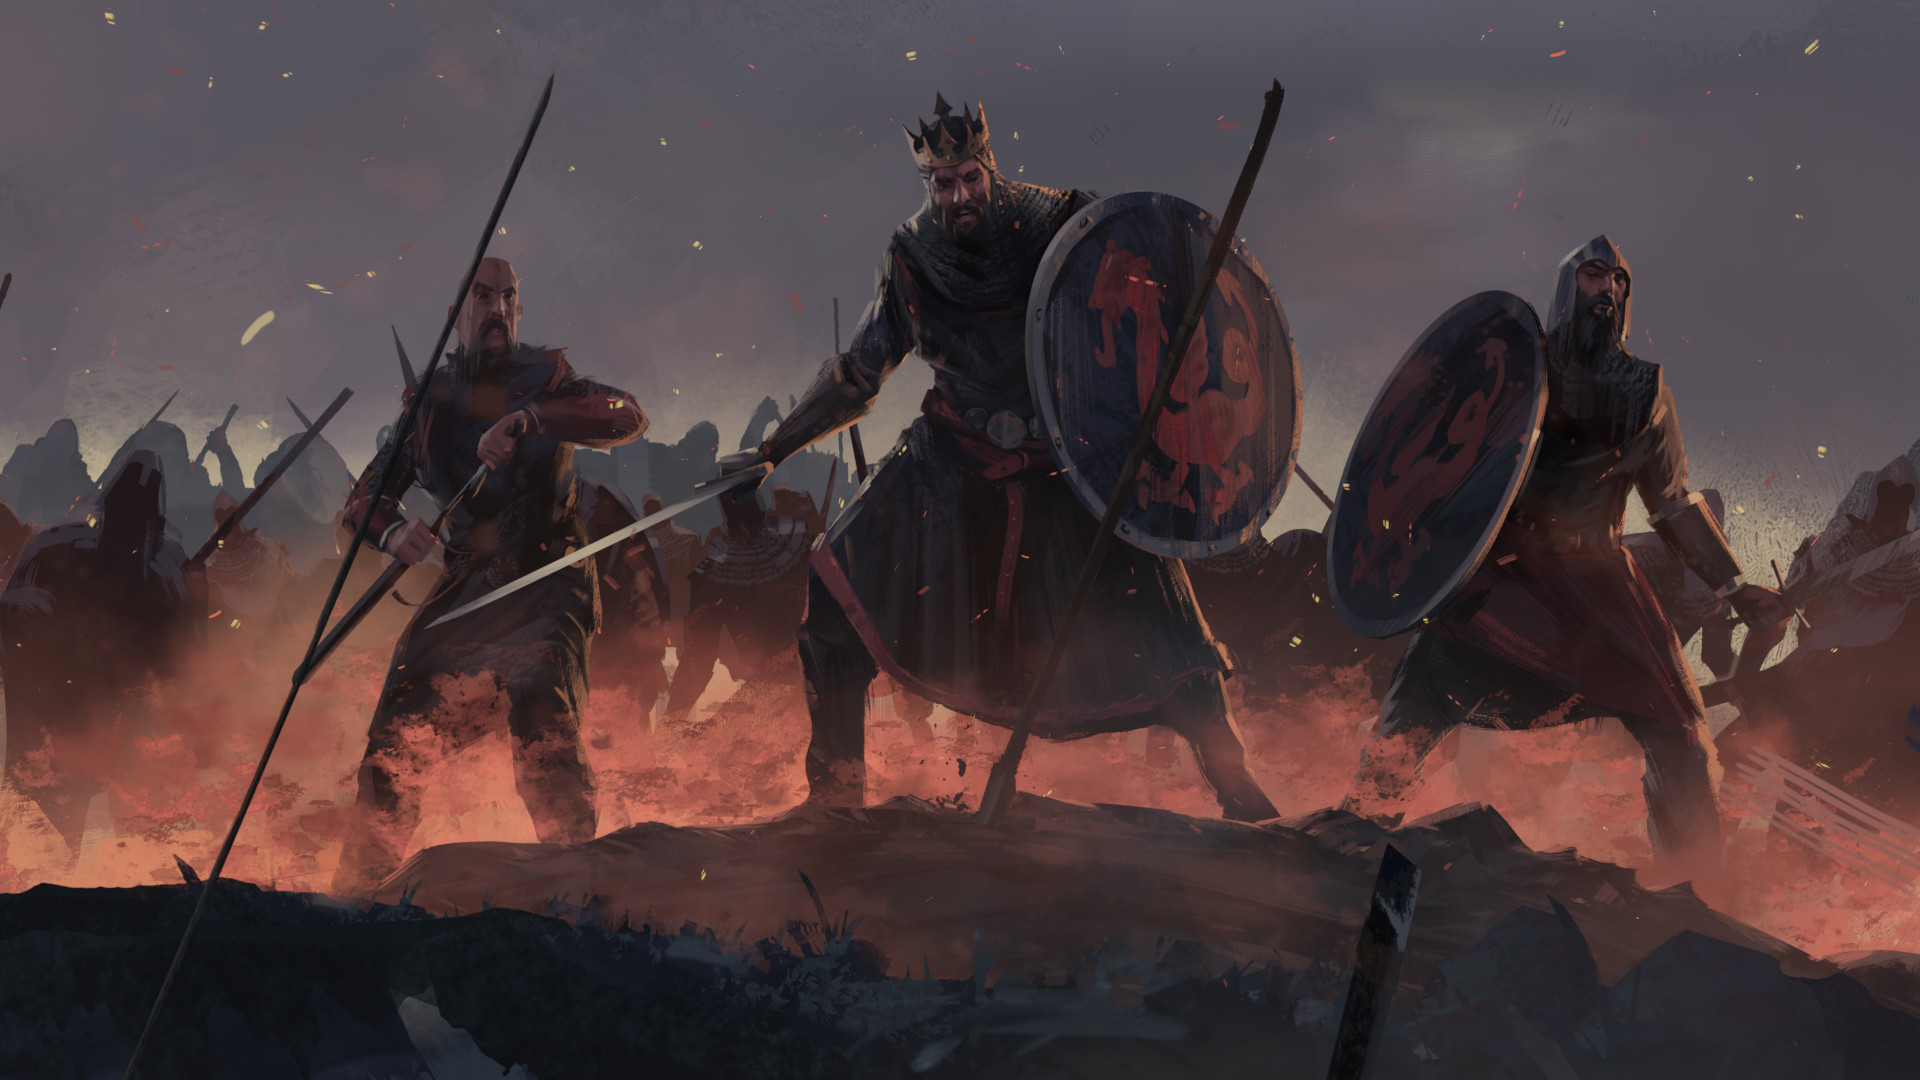 Скачать обои Total War Saga: Престолы Британии на телефон бесплатно